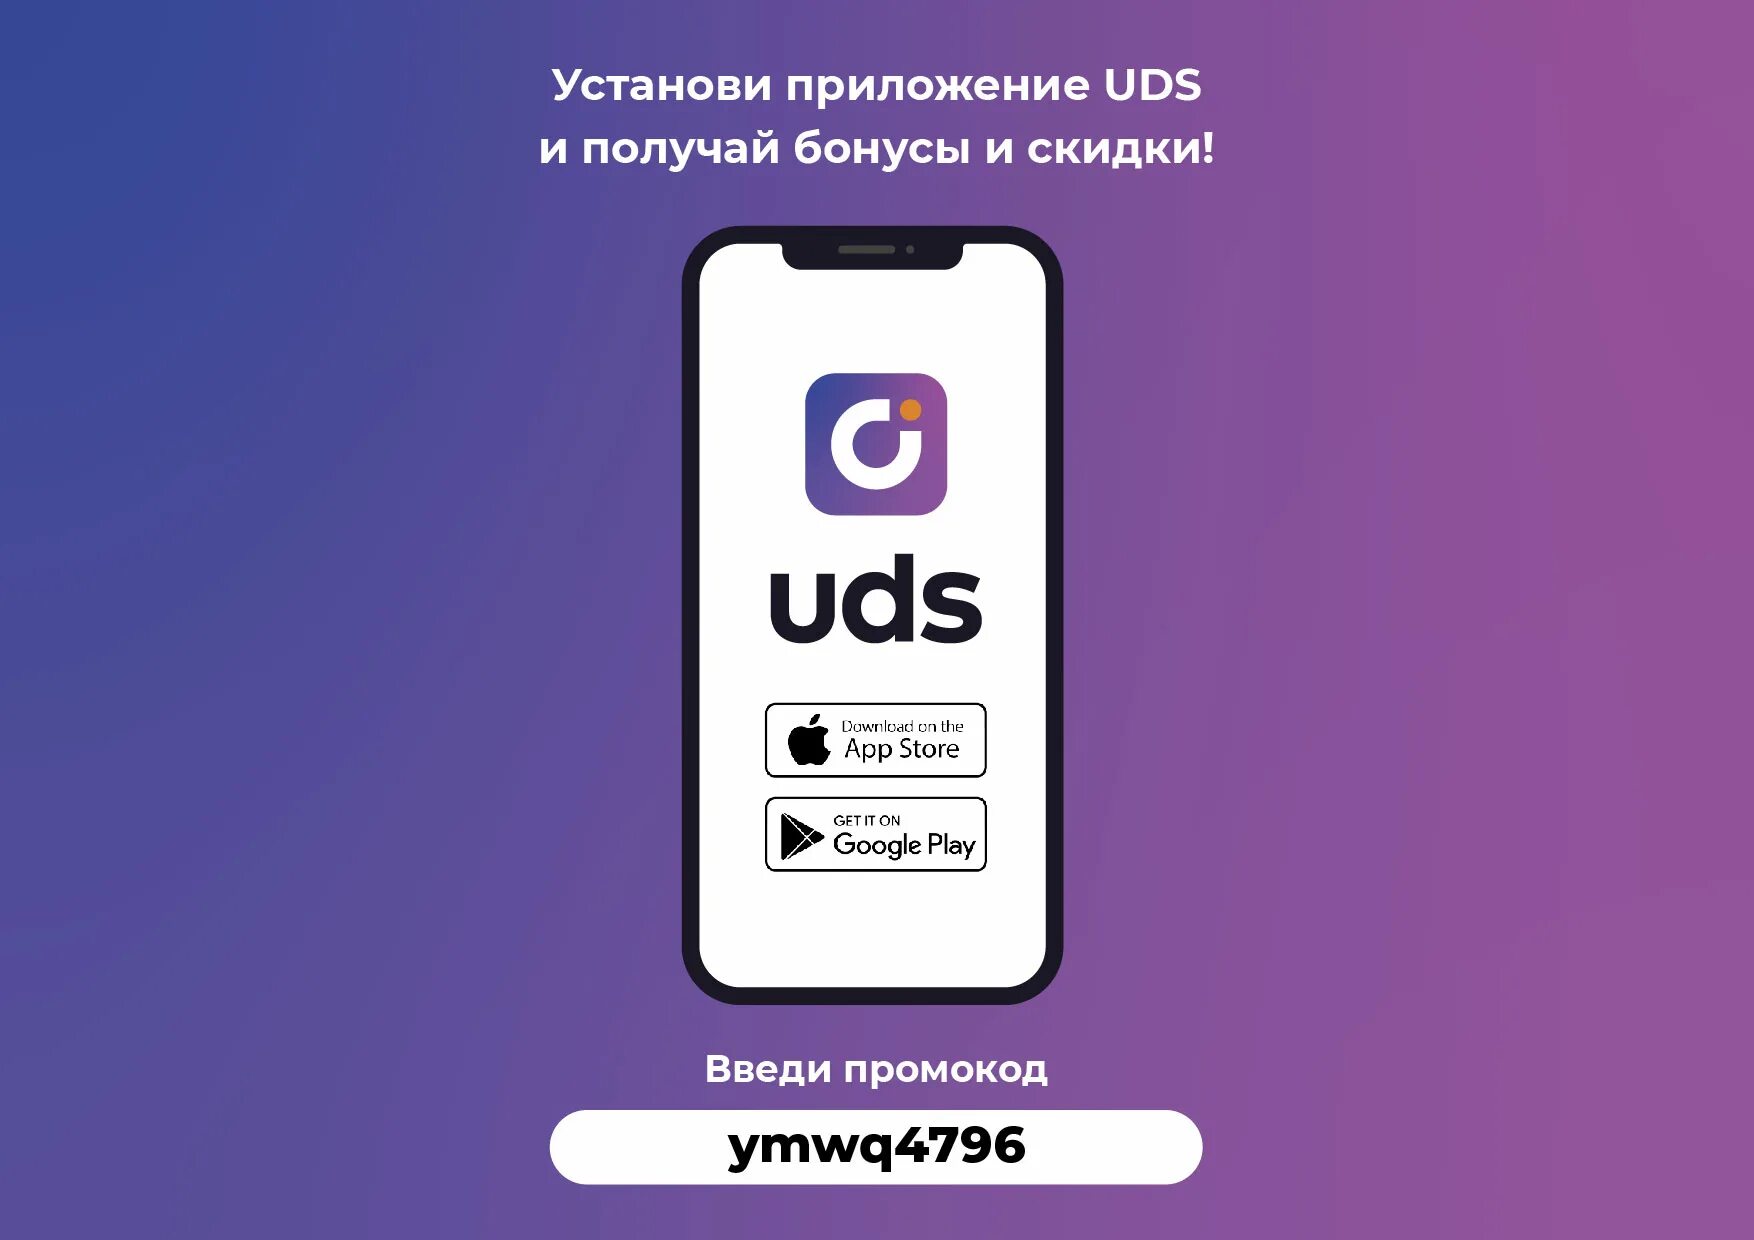 Https apps bonus app. UDS приложение. Бонусная программа UDS. Бонусное приложение UDS. UDS скидки.